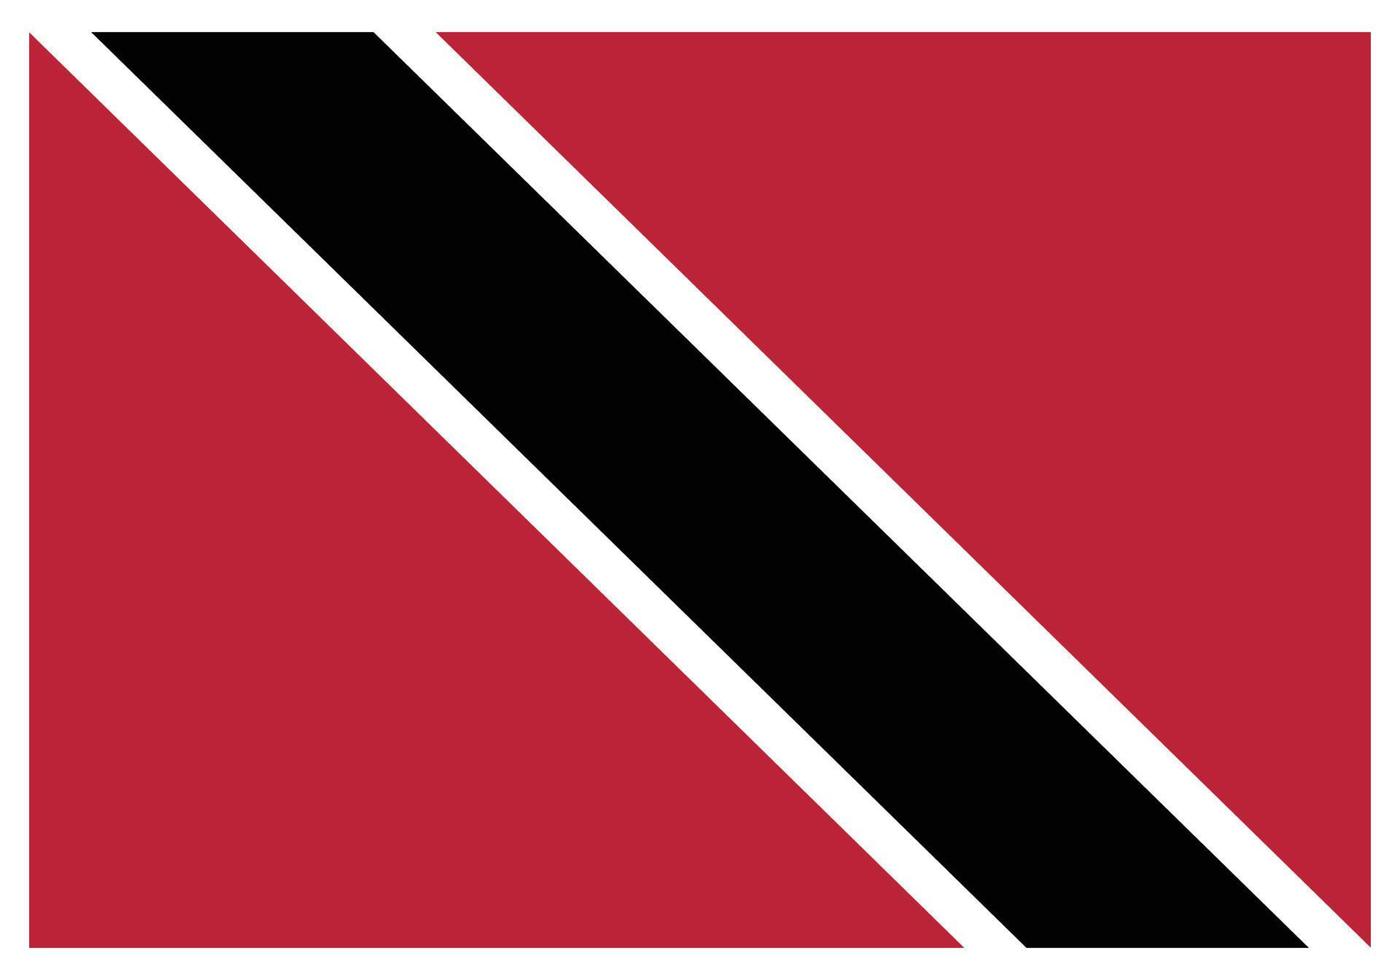 nationalflagge von trinidad und tobago - flaches farbsymbol. vektor